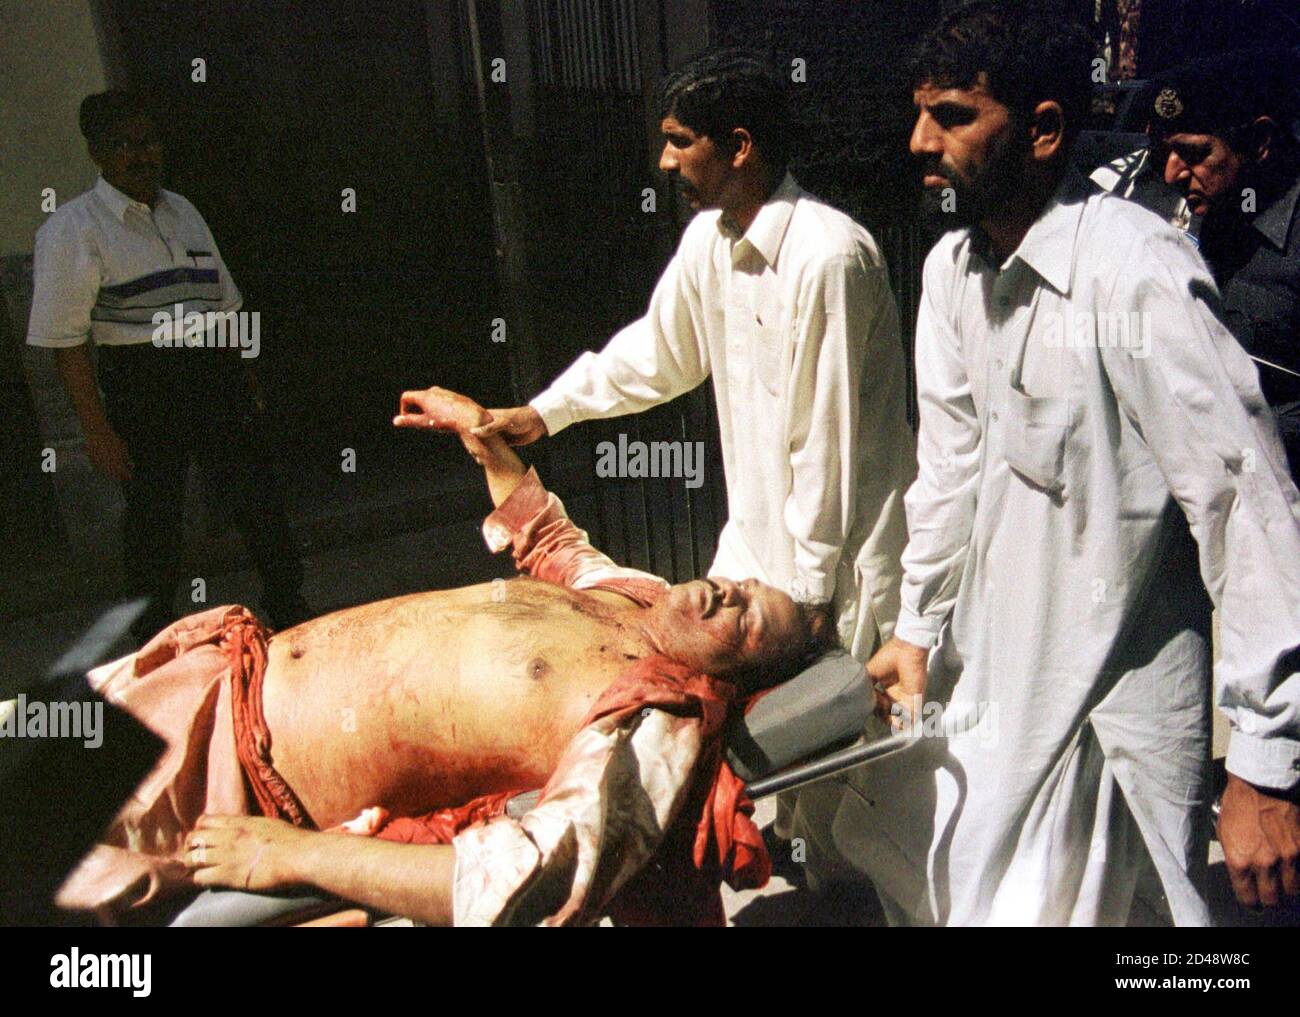 Des personnes retirent un corps à la suite d'un incident de tir à Lahore le 19 mars 2002. Deux hommes armés non identifiés sur une moto ont tué mardi un professeur, son chauffeur et un passant dans la province centrale de Pujab, au Pakistan, dans deux incidents distincts, a déclaré la police. REUTERS/Mohsin Raza ZH/CP Banque D'Images